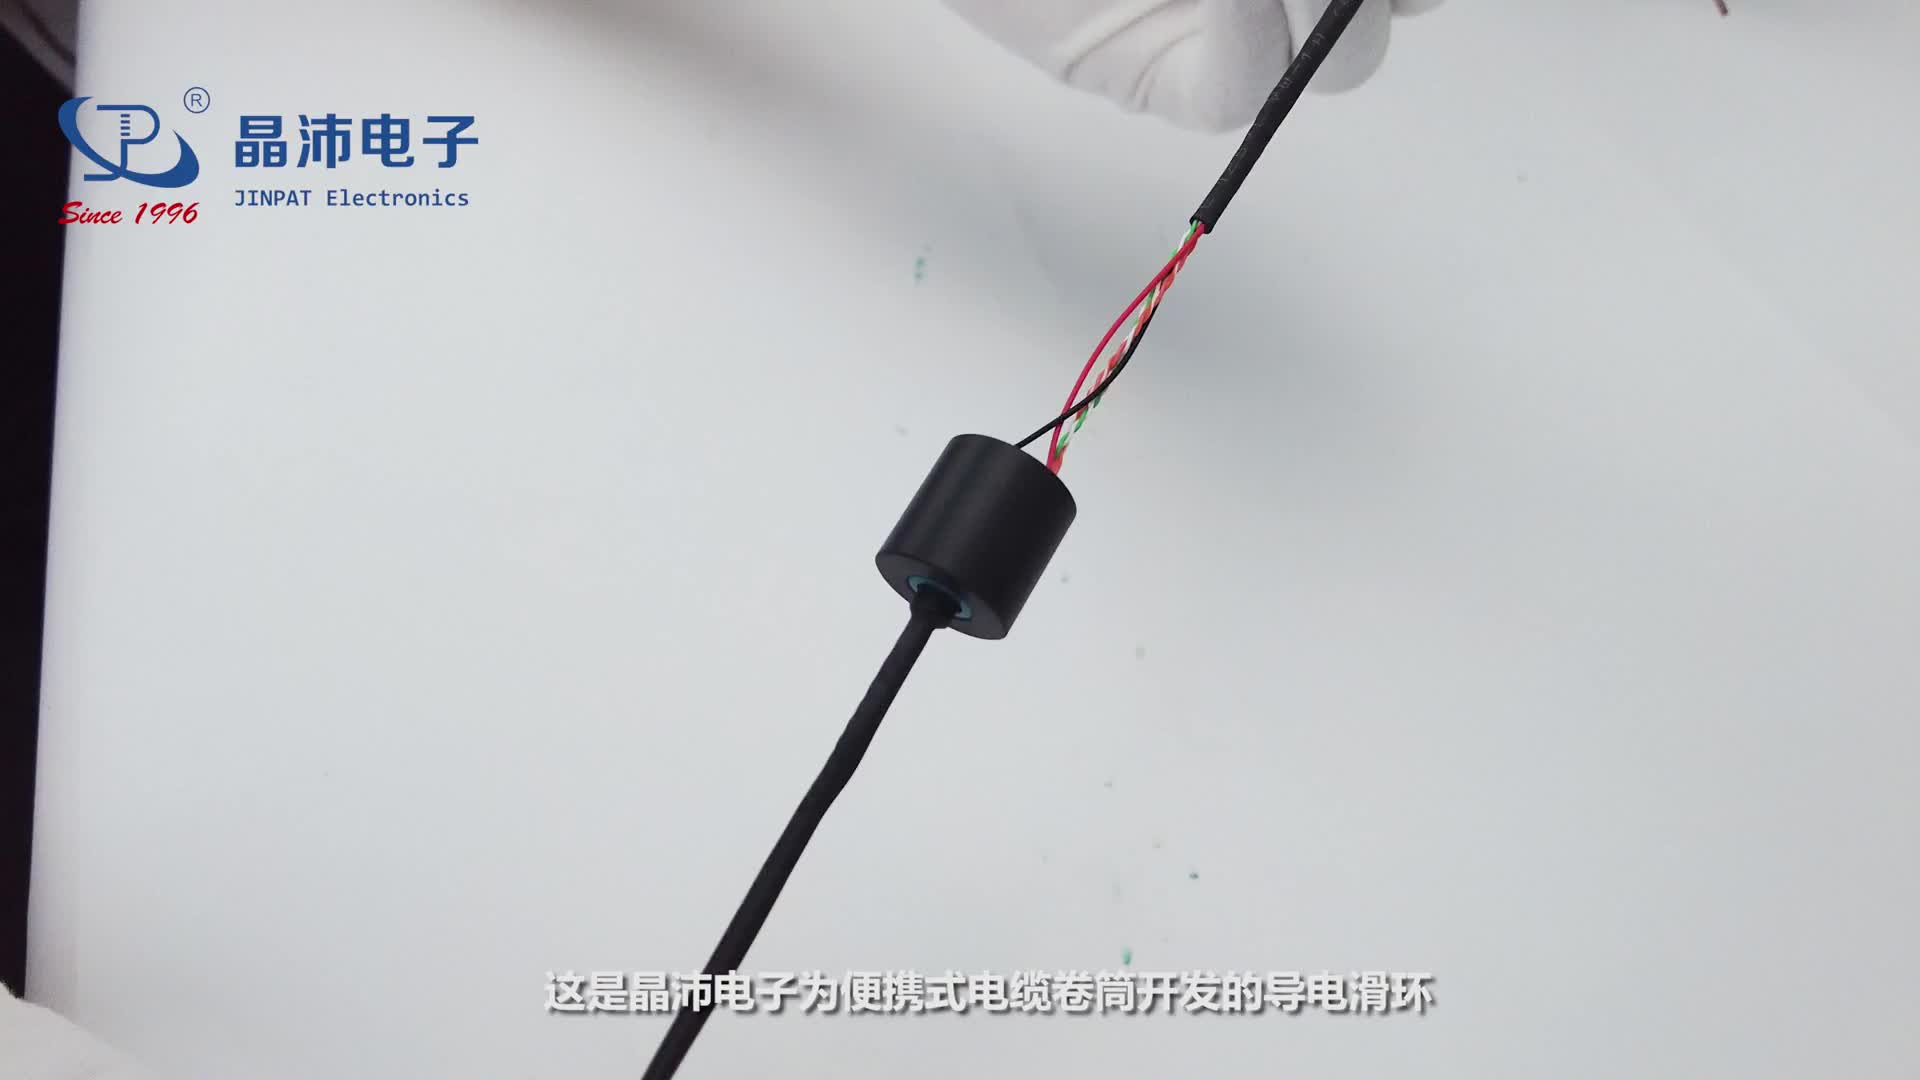 晶沛近期新品展示——新型便携式电缆卷筒用滑环